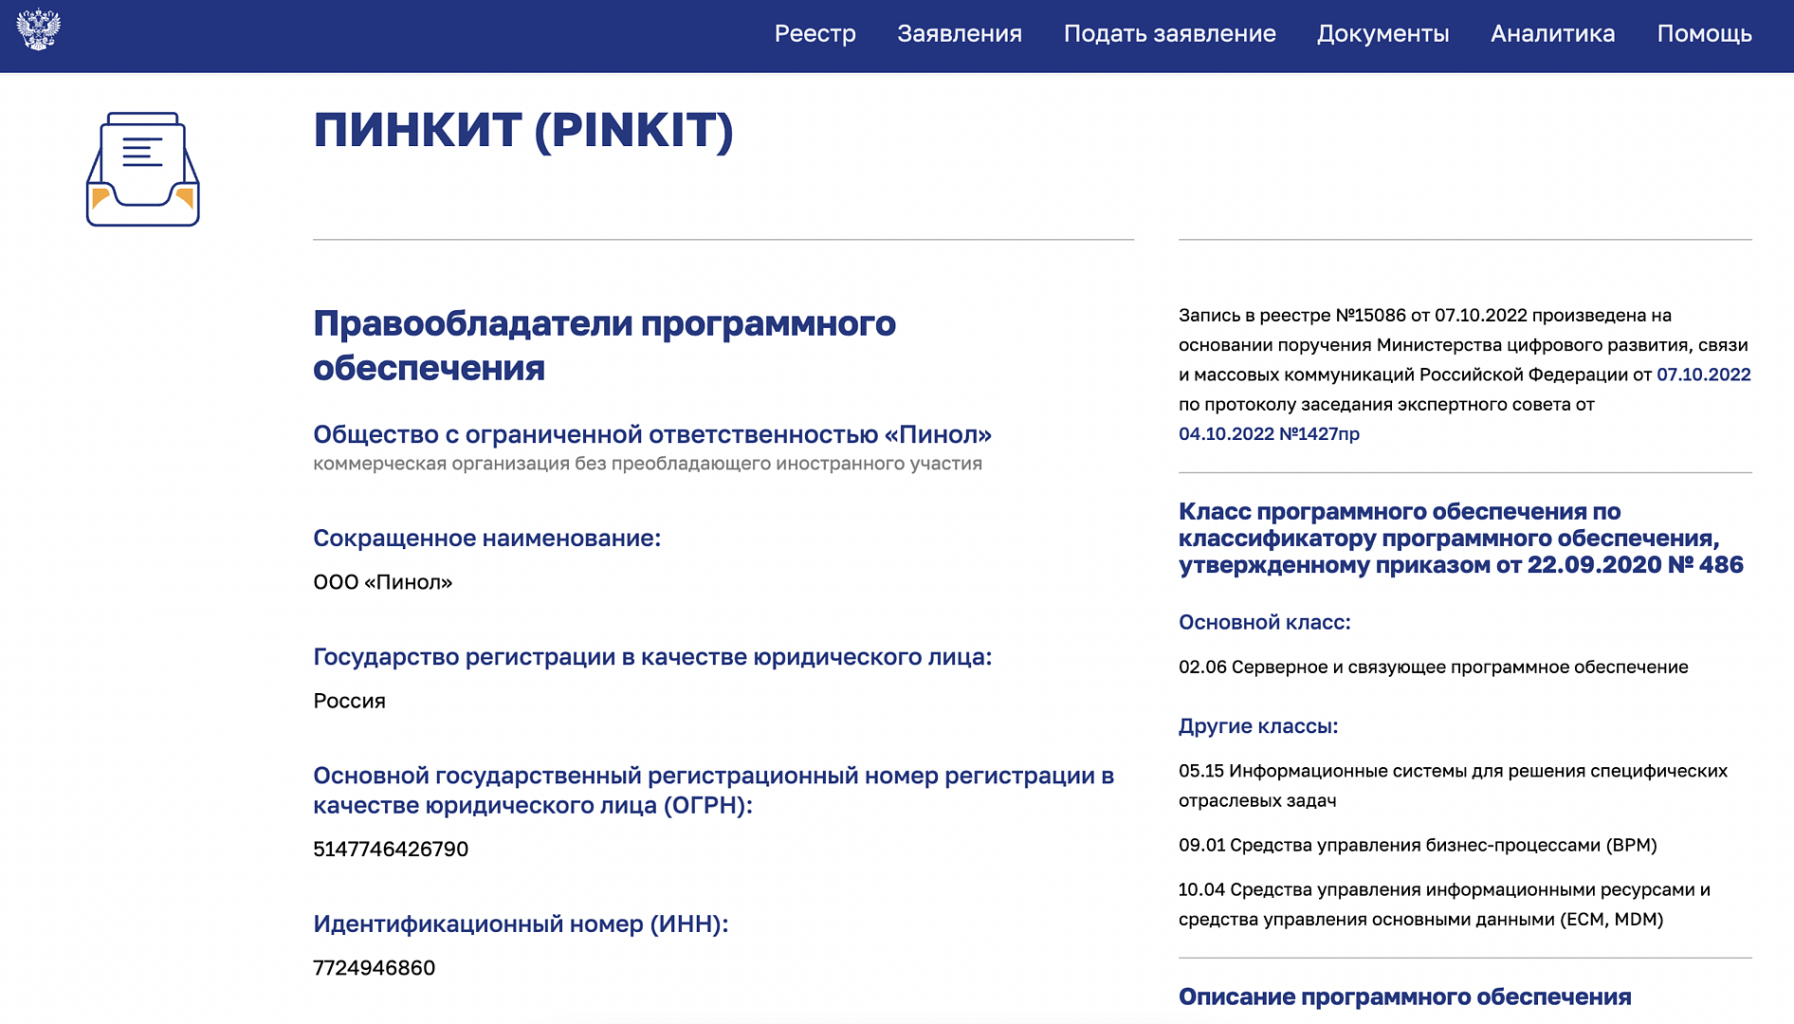 Пинкит включен в реестр программного обеспечения РФ